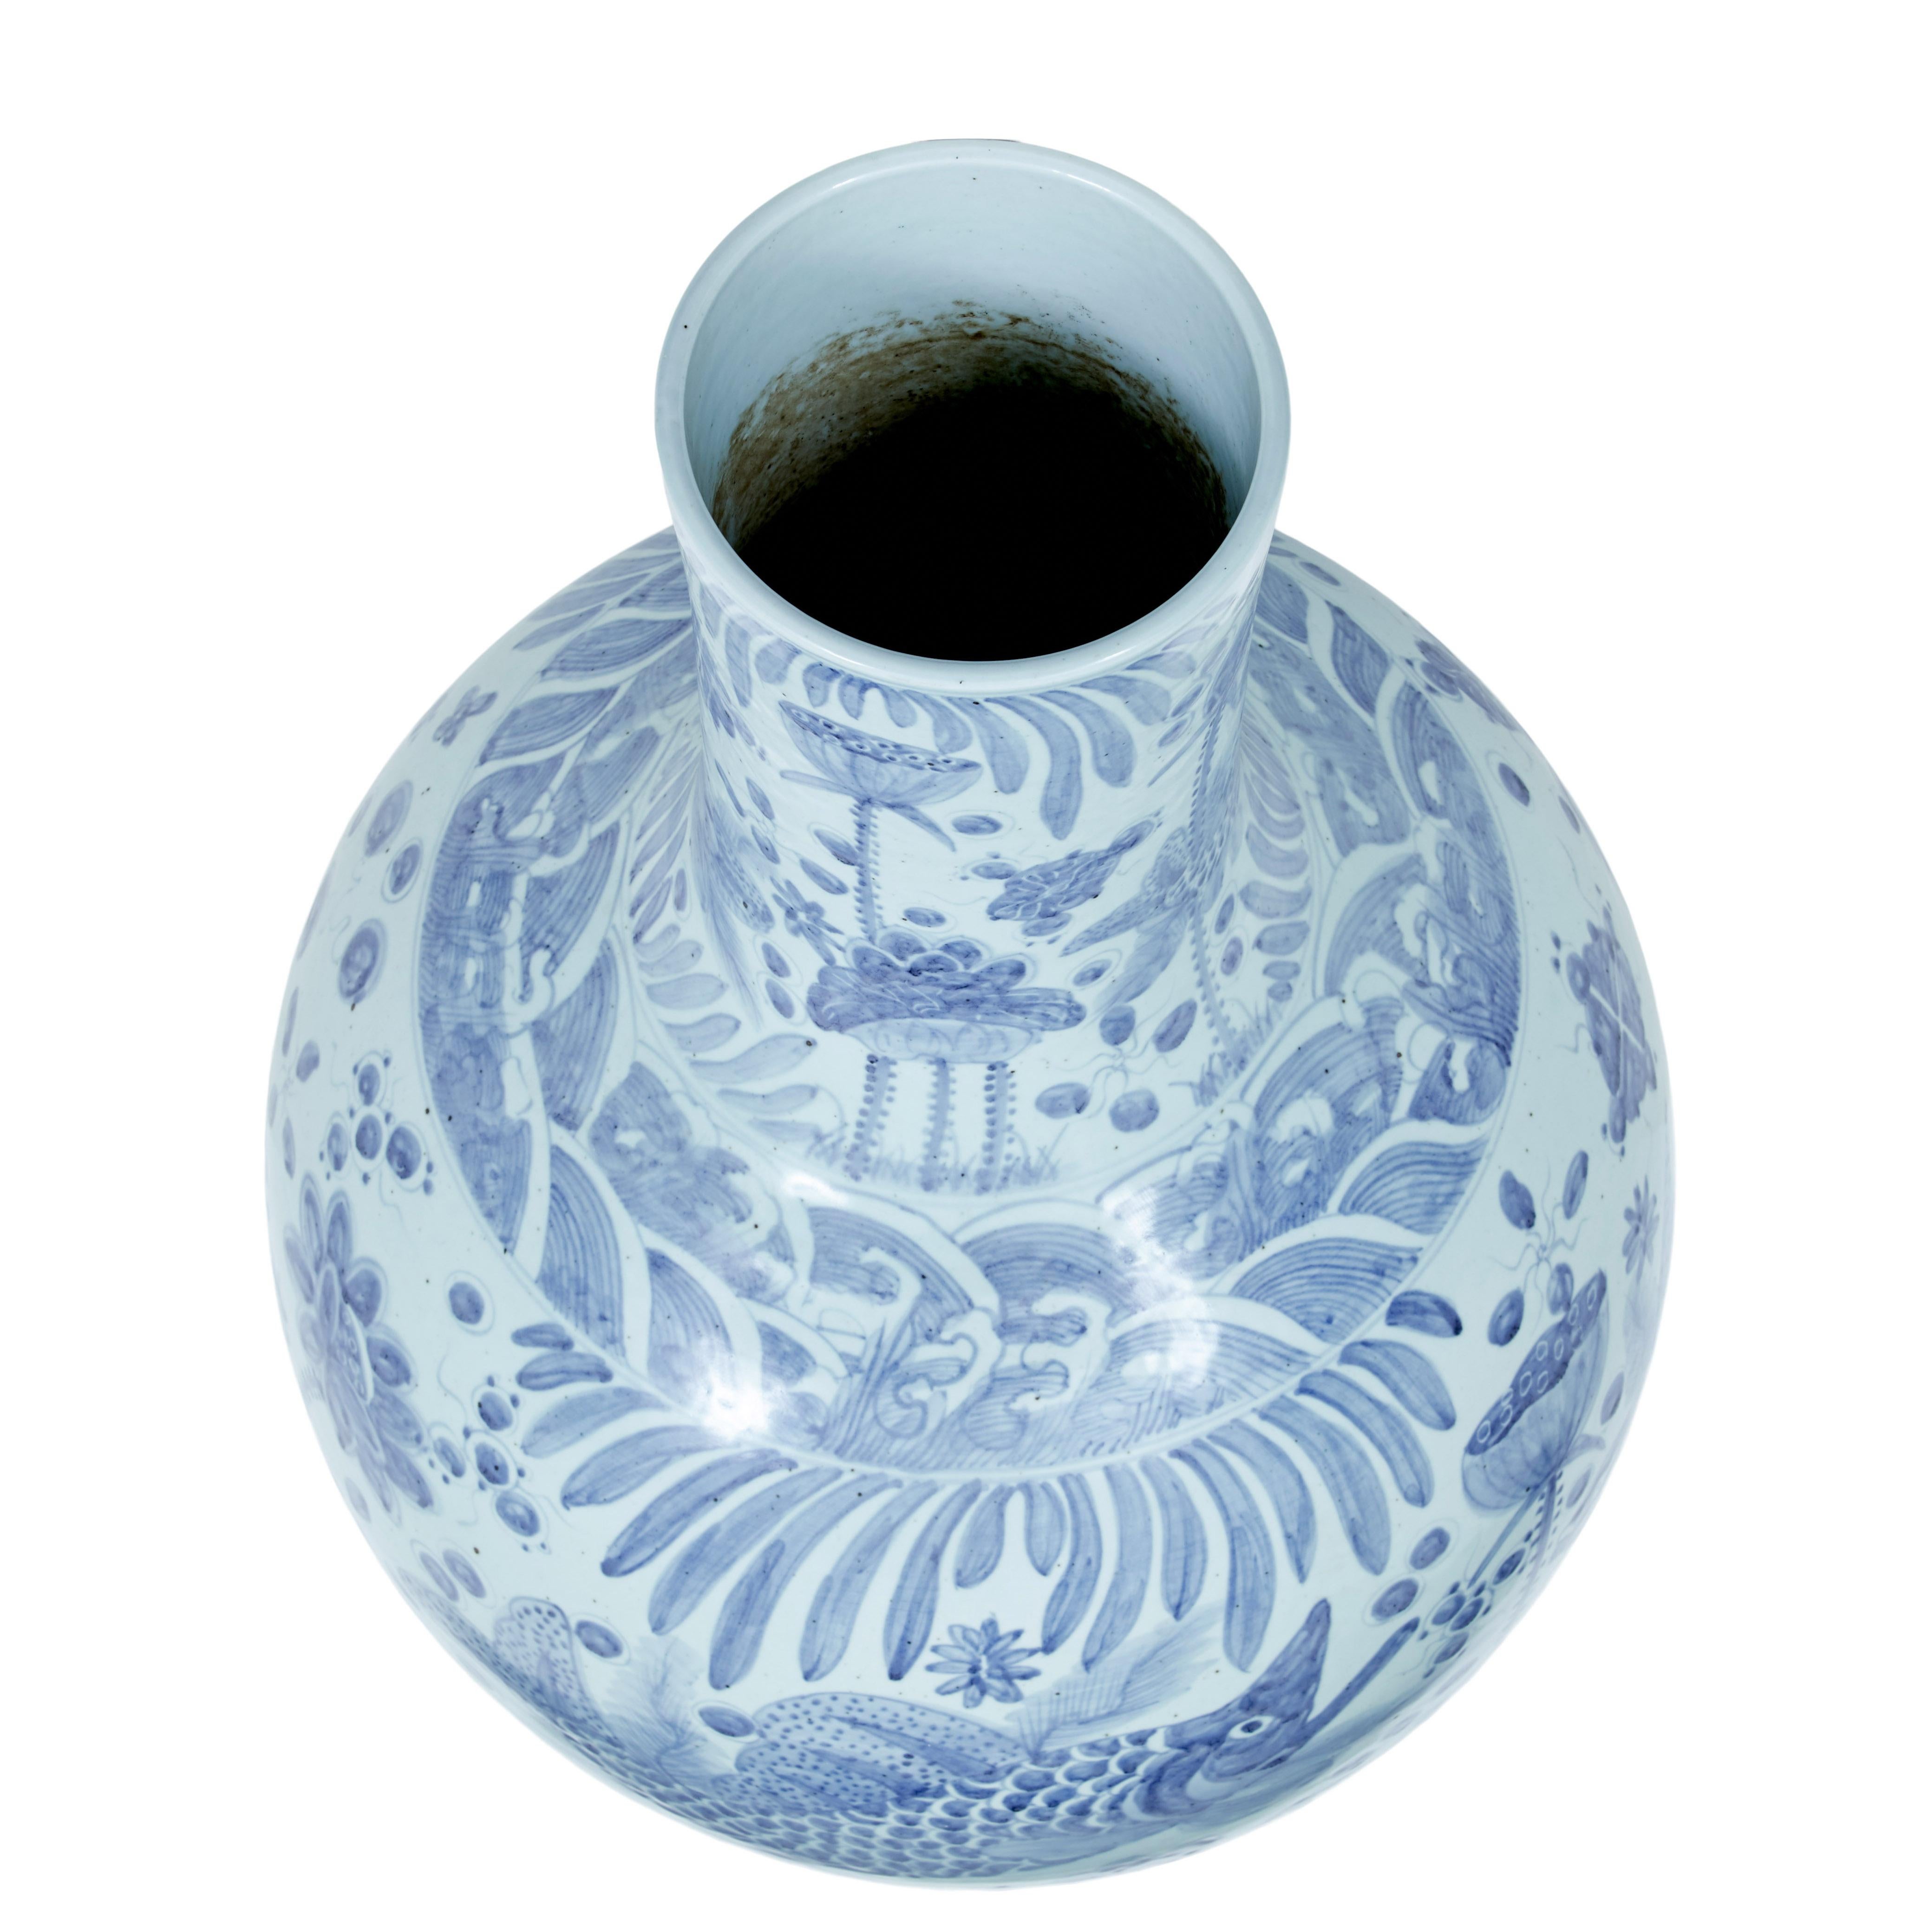 Large Decorative Blue and White Ceramic Chinese Vase 2